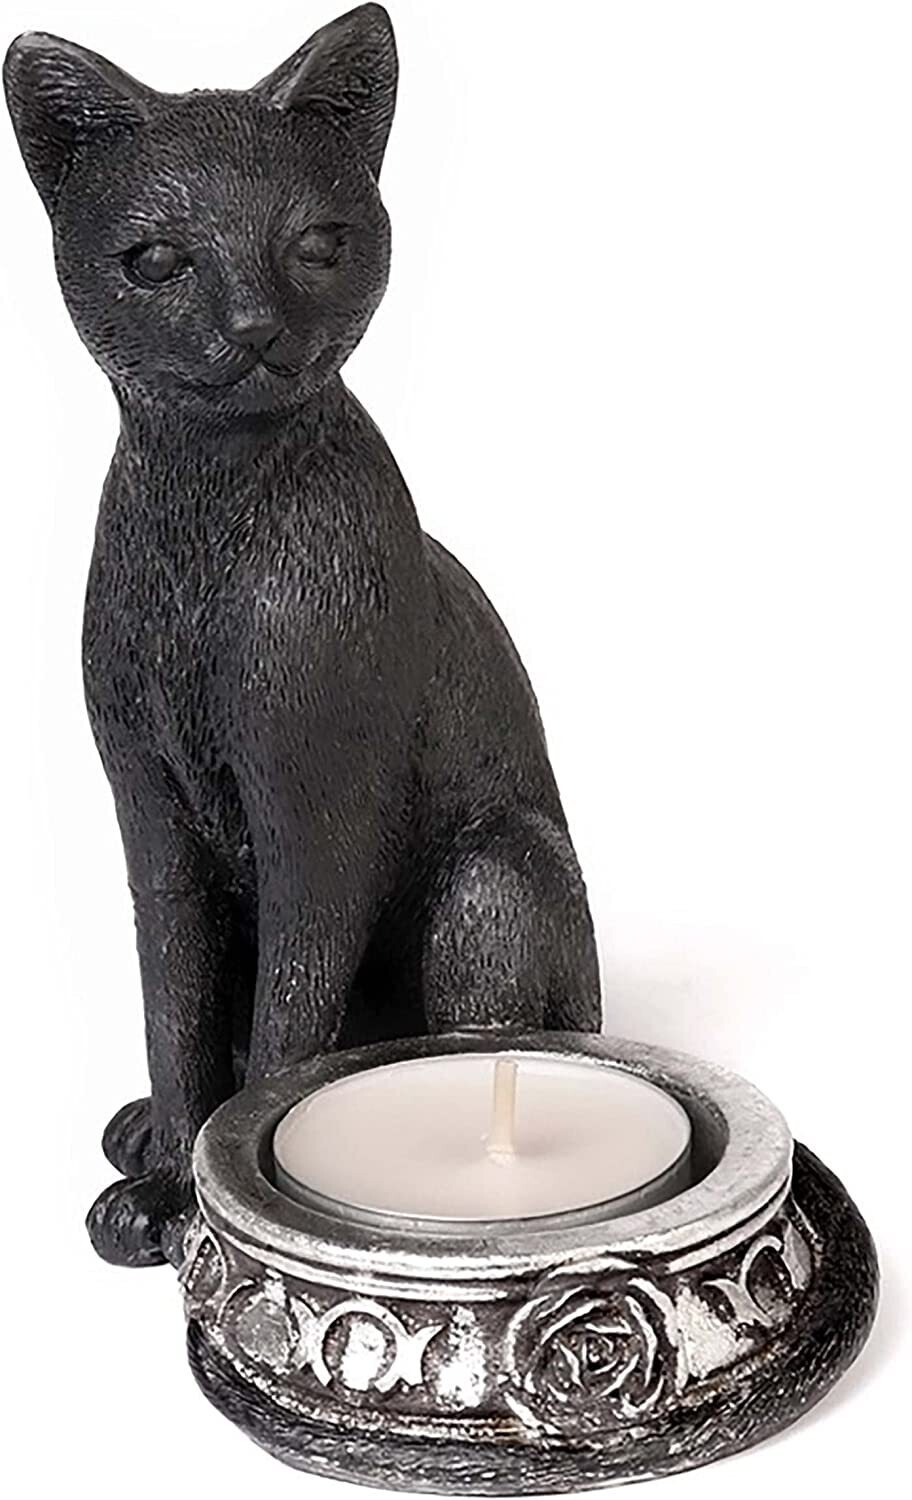 Black Cat T-Light